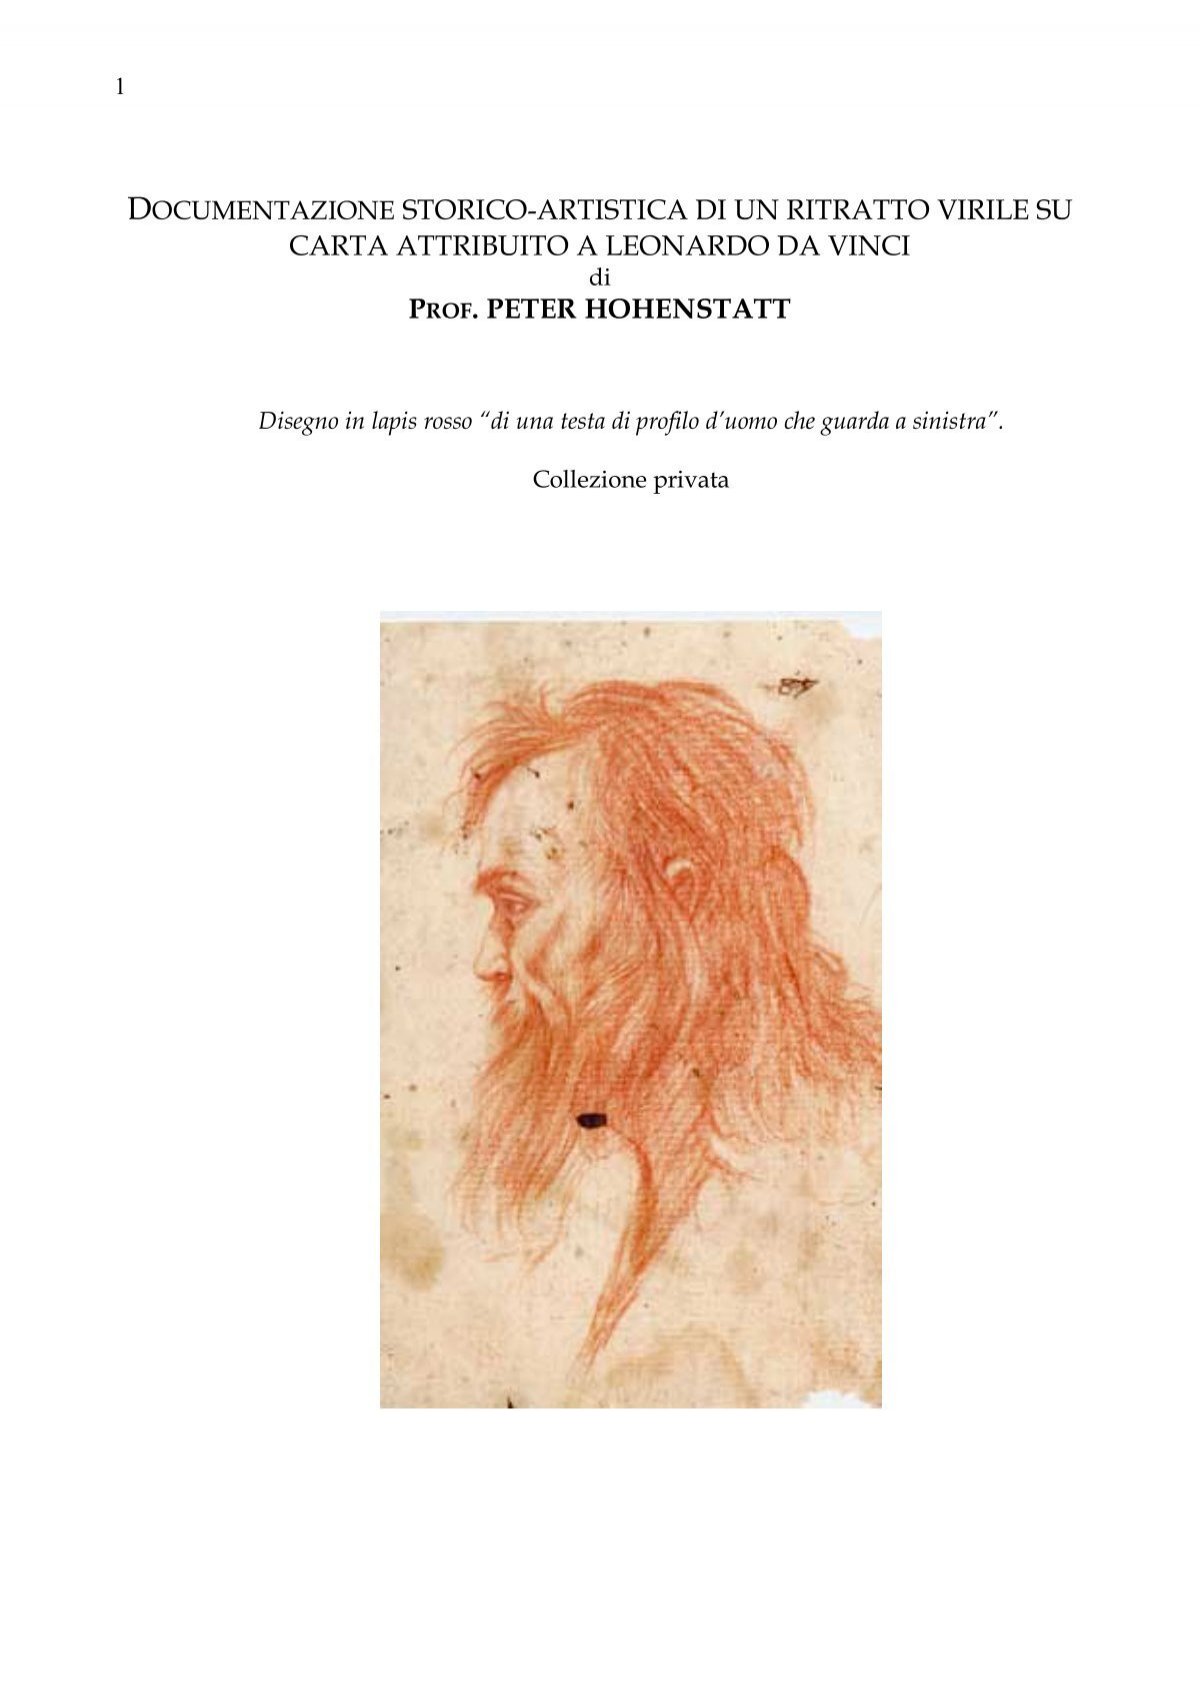 L'Arte del Disegno - Leonardo da Vinci - Testa virile di profilo